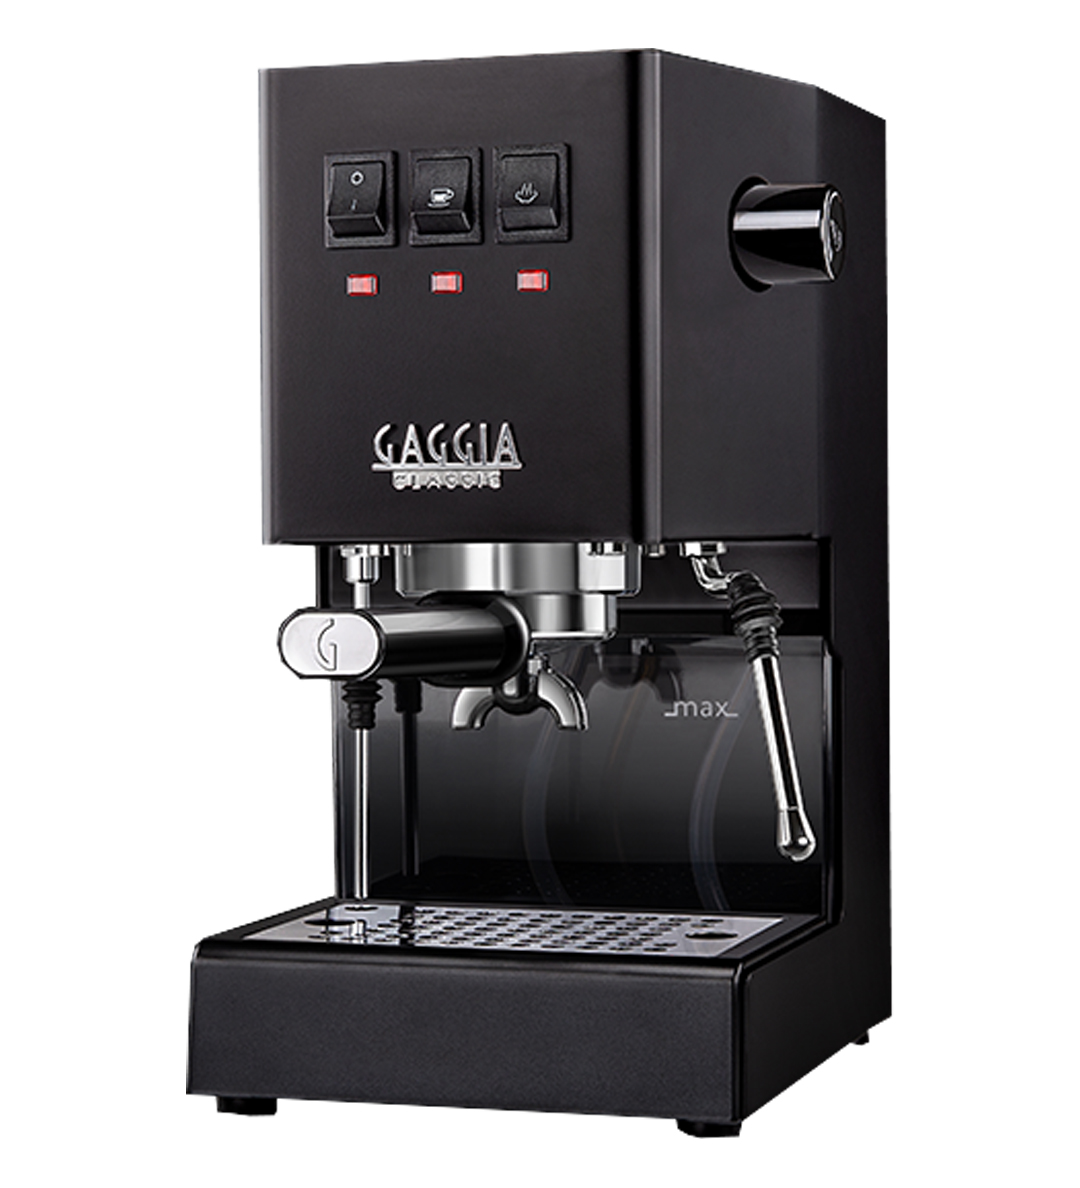 Gaggia Classic Evo Pro Thunder Black Espresso Machine